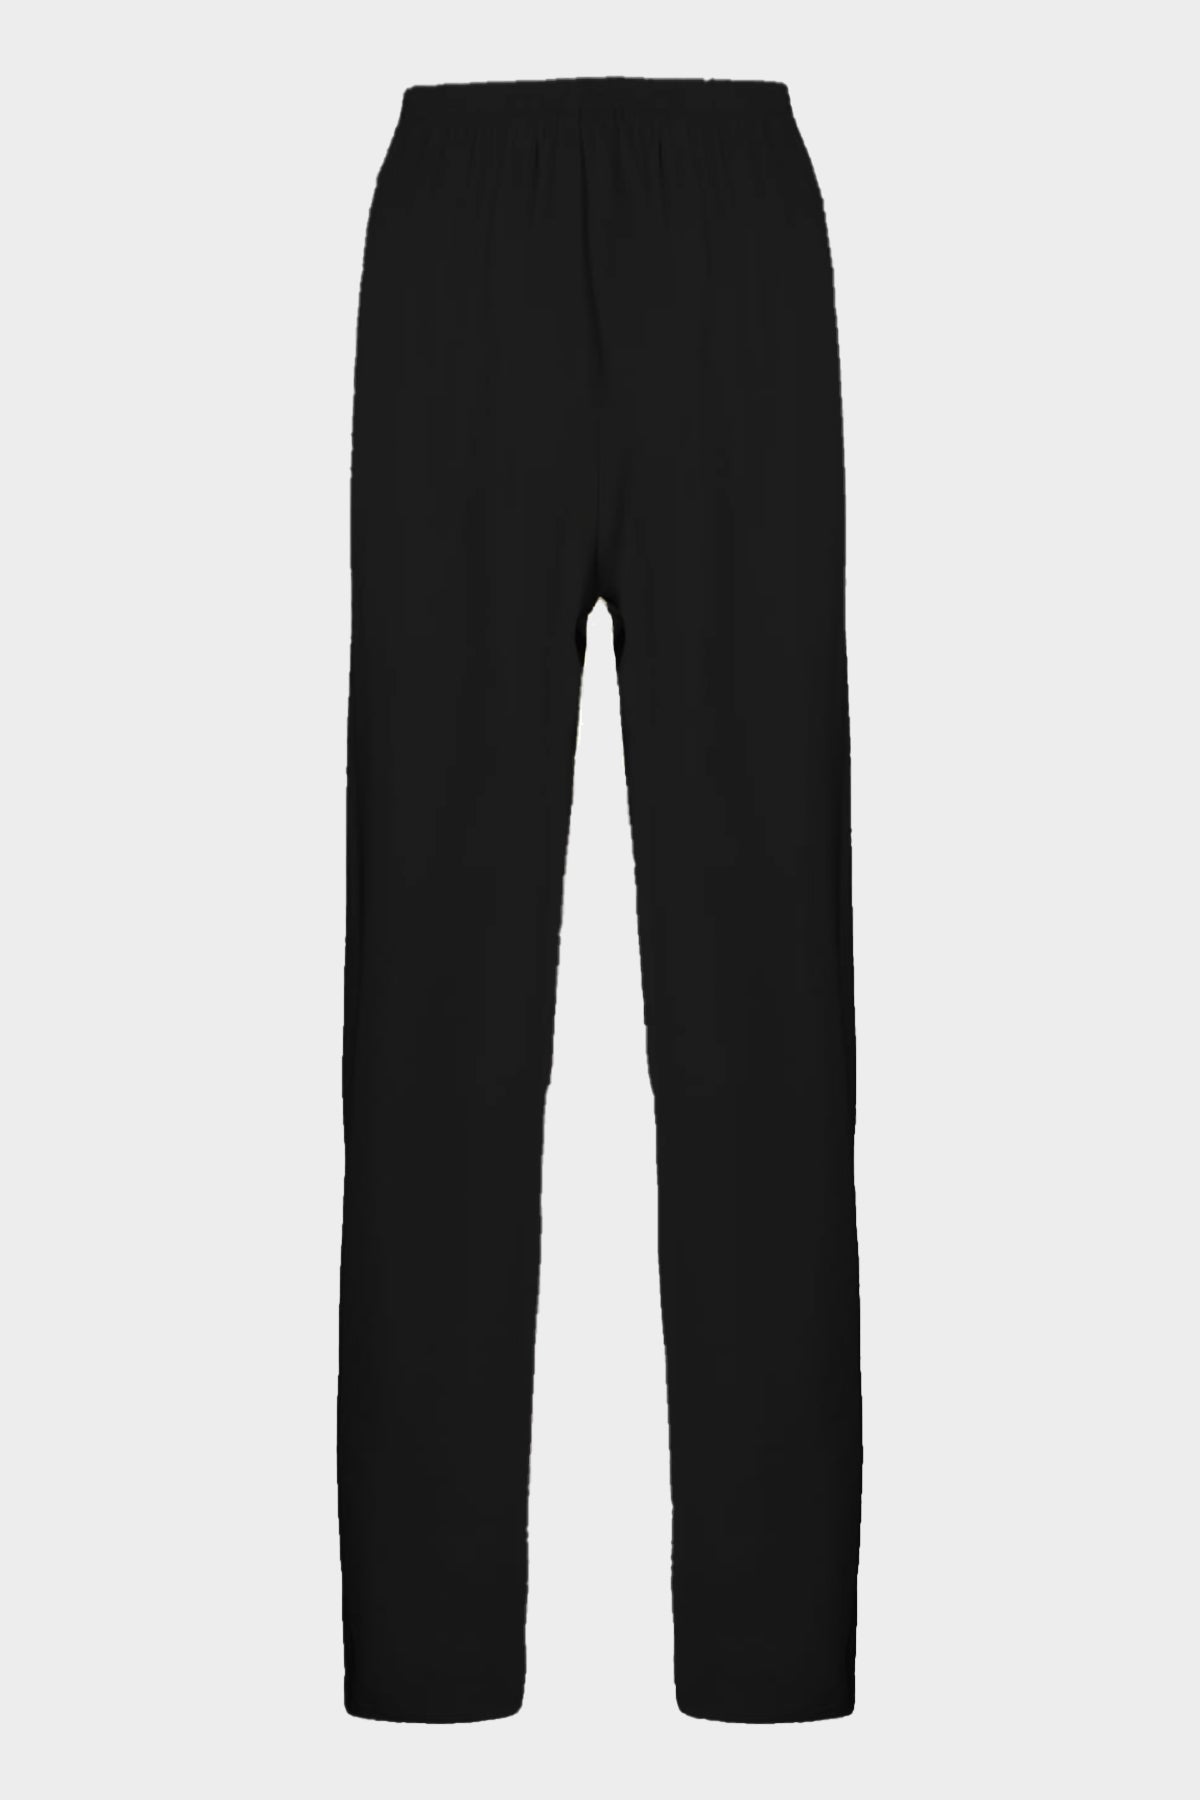 Ripstop Fluid Viscose Elasticated Pants in Black - shop-olivia.com